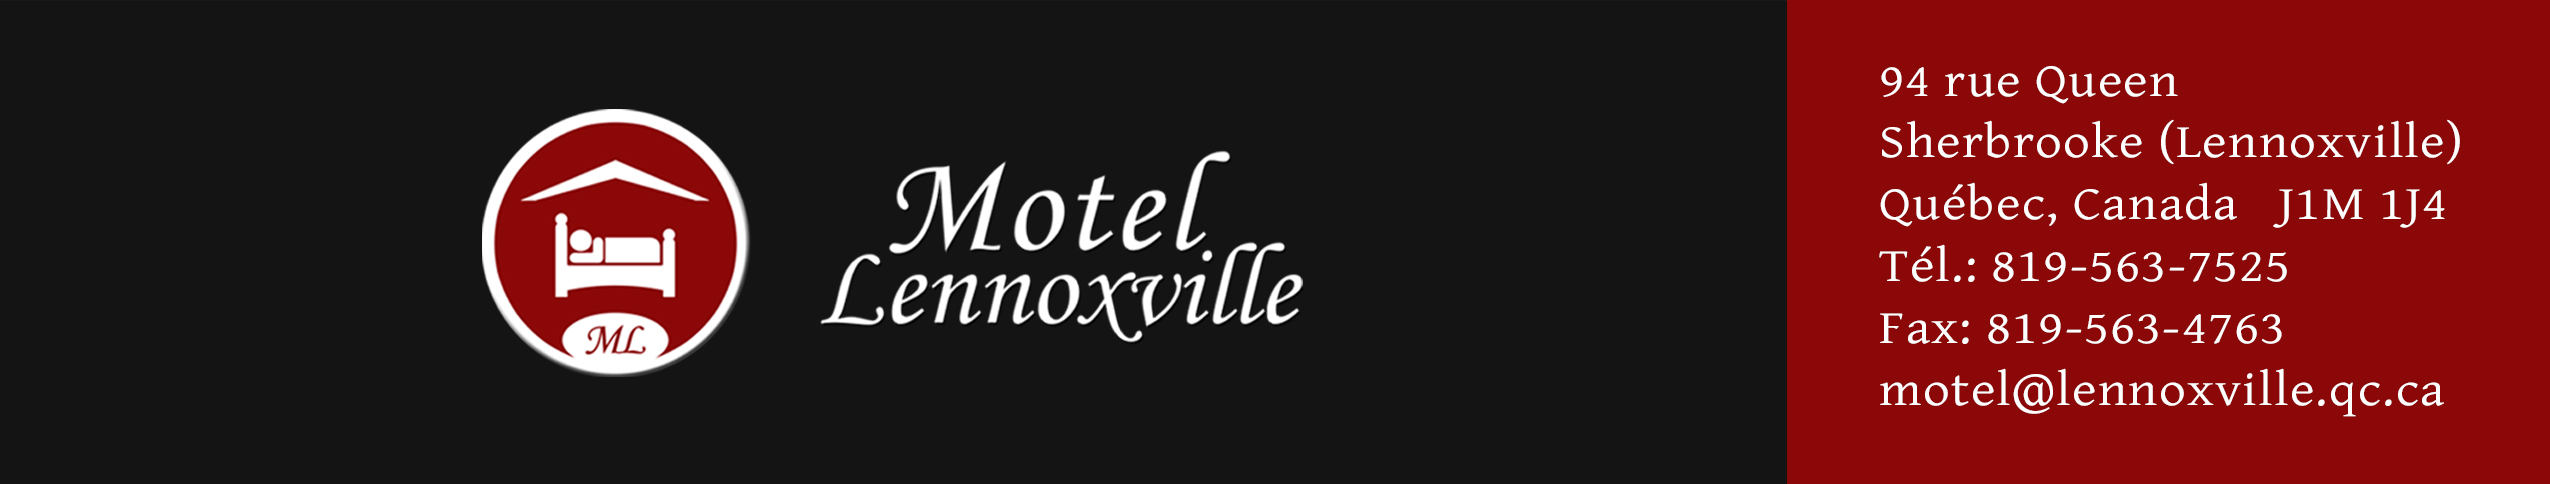 motel lennoxville inc